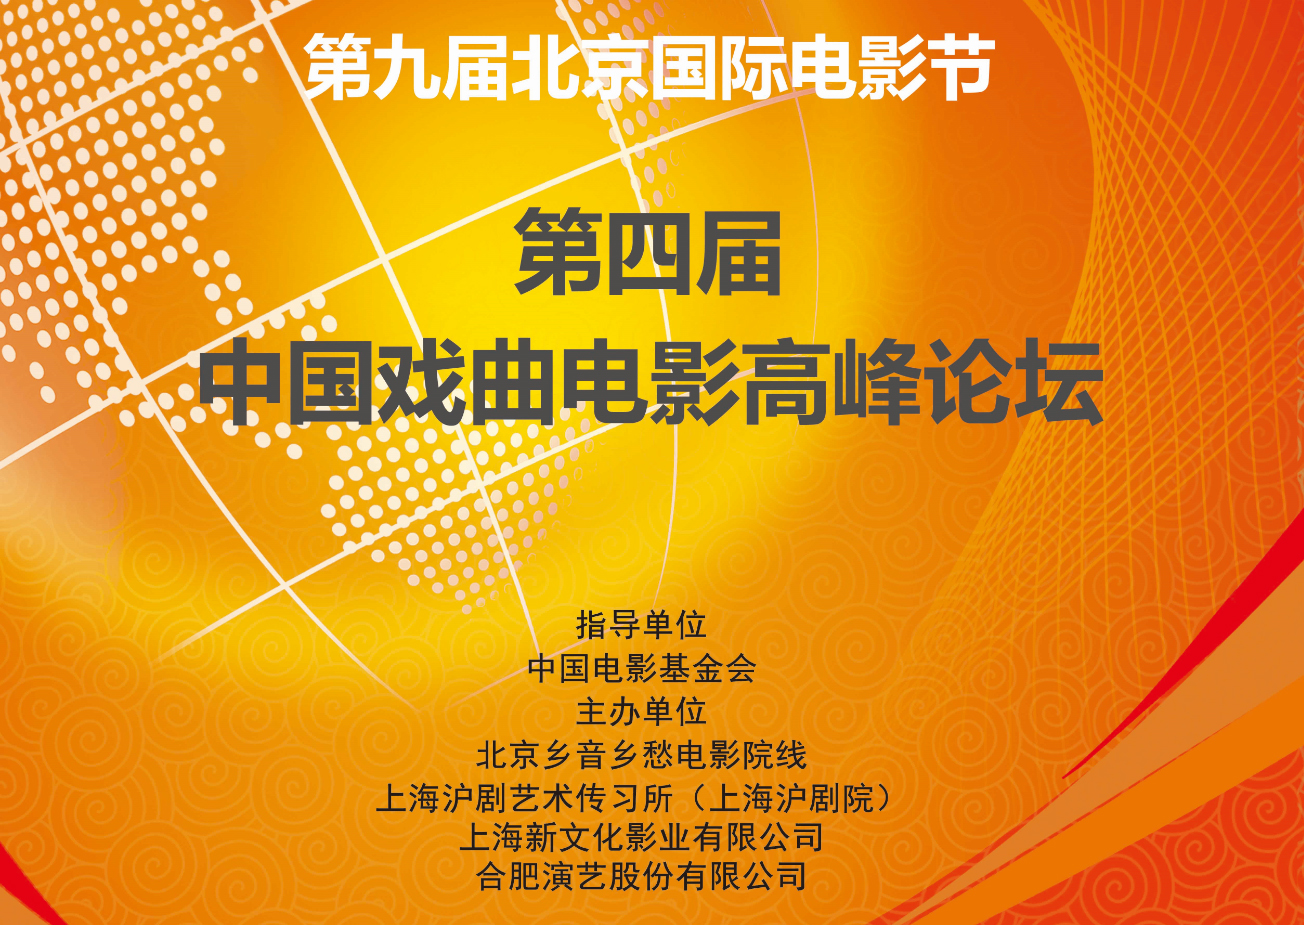 第四届中国戏曲电影高峰论坛·第九届北京国际电影节